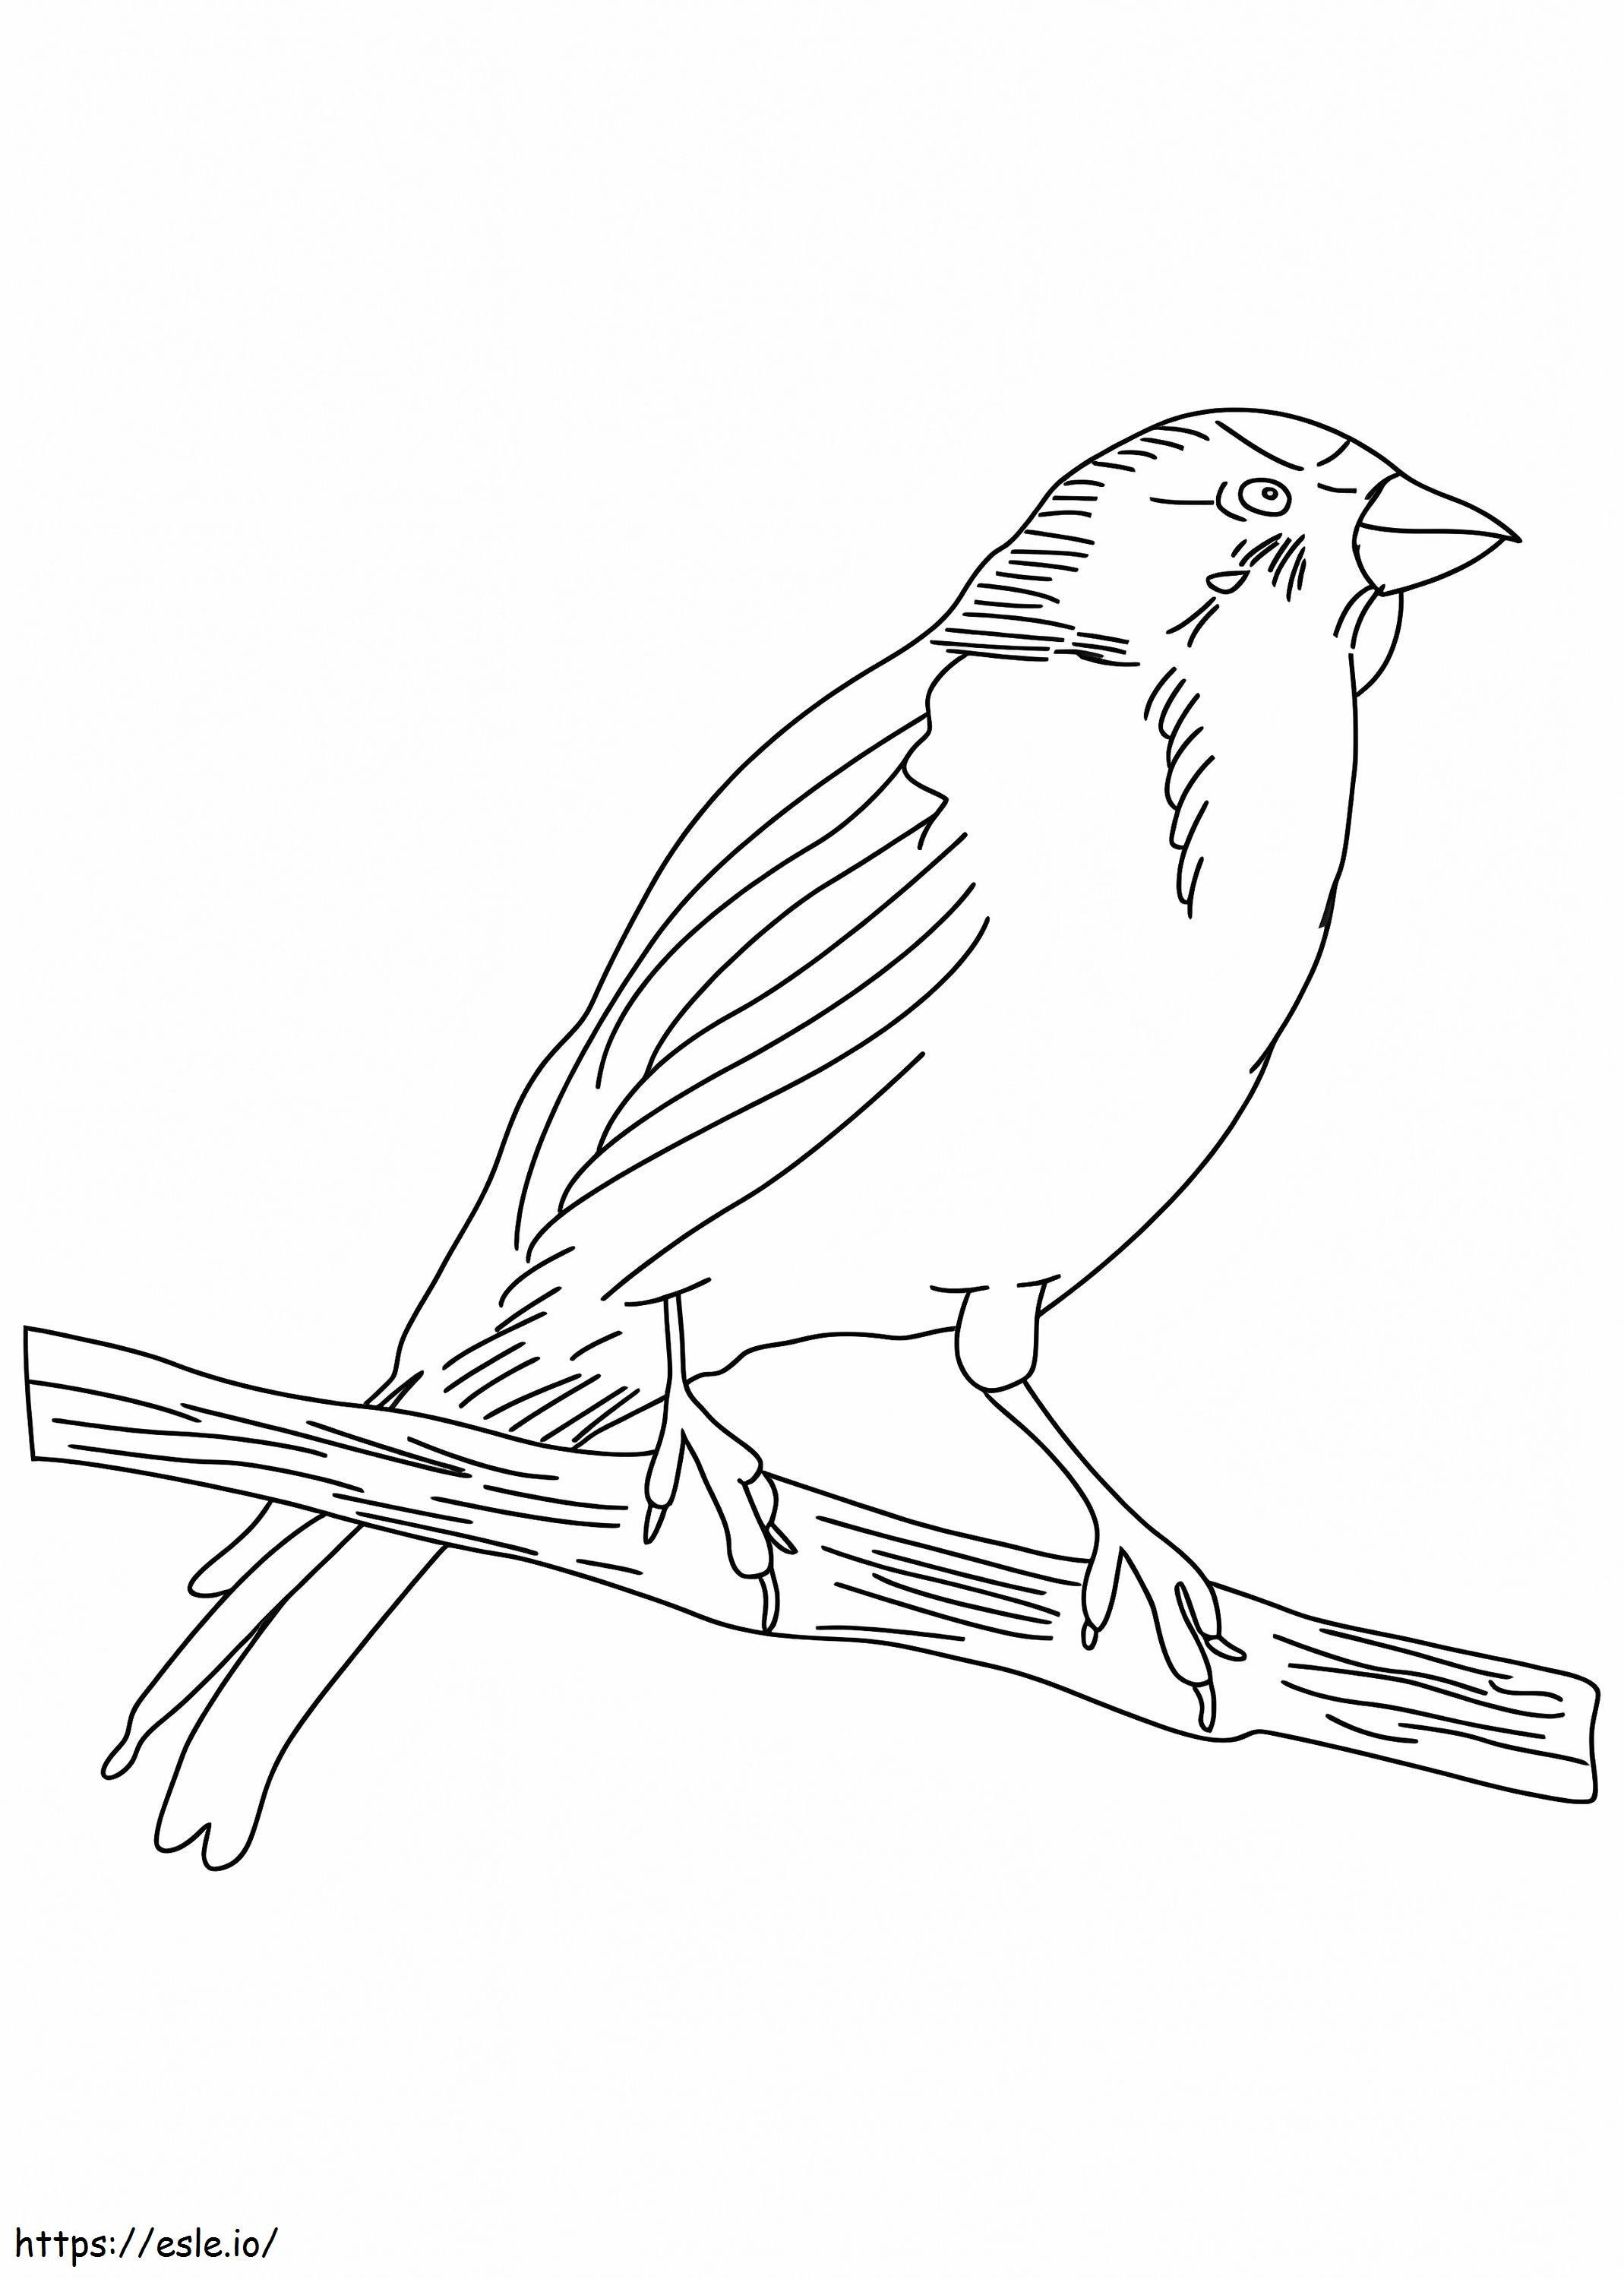 Dibujar A Lápiz Pájaro Canario para colorear